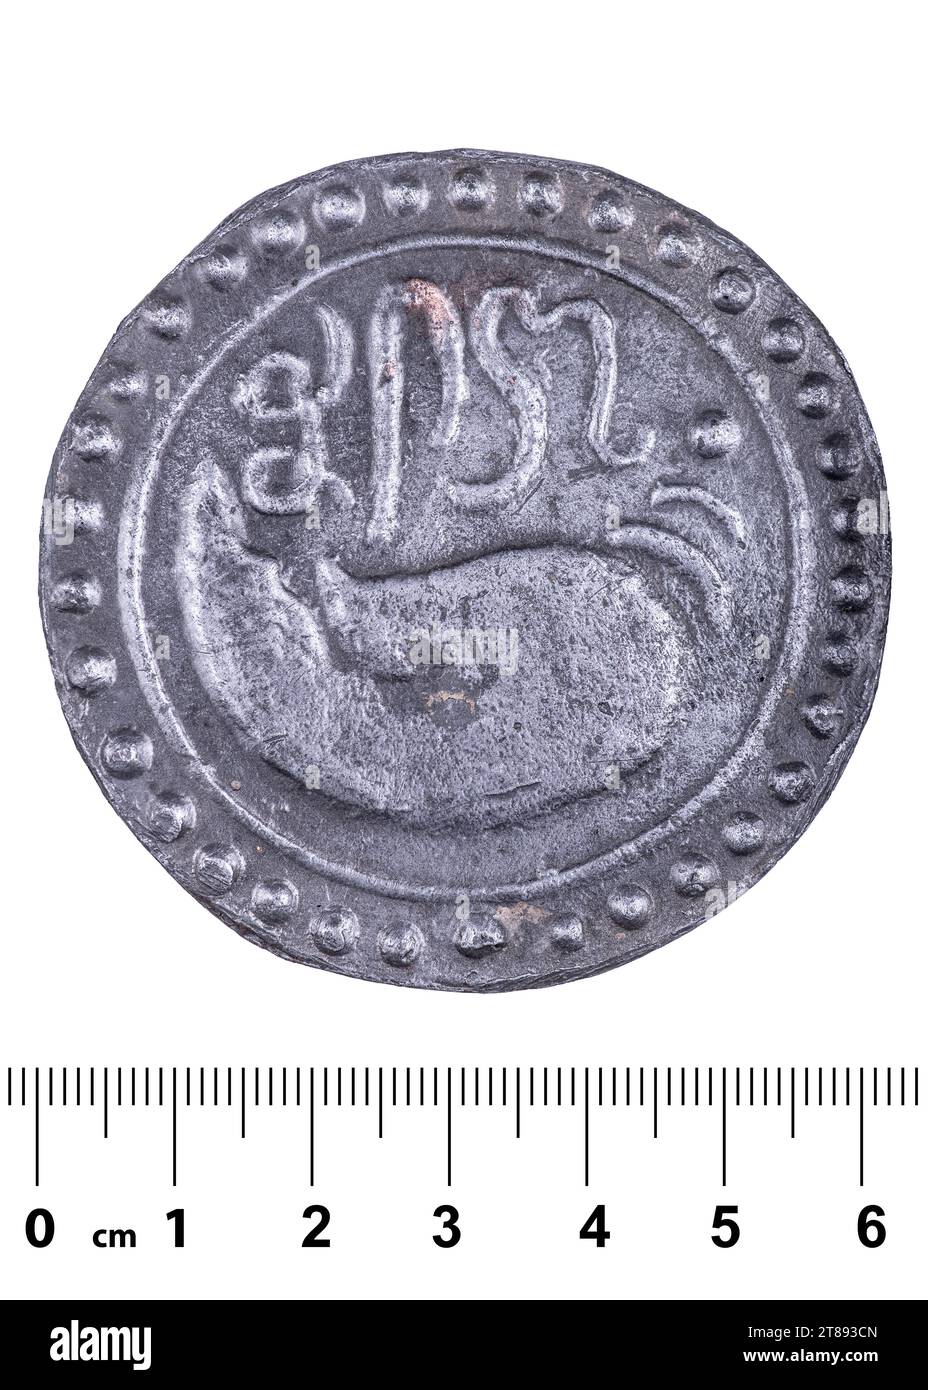 Une ancienne pièce de monnaie du royaume de Funan avec une image d'une coquille et une inscription dans une langue oubliée ancienne. Avers. Isolé sur blanc Banque D'Images